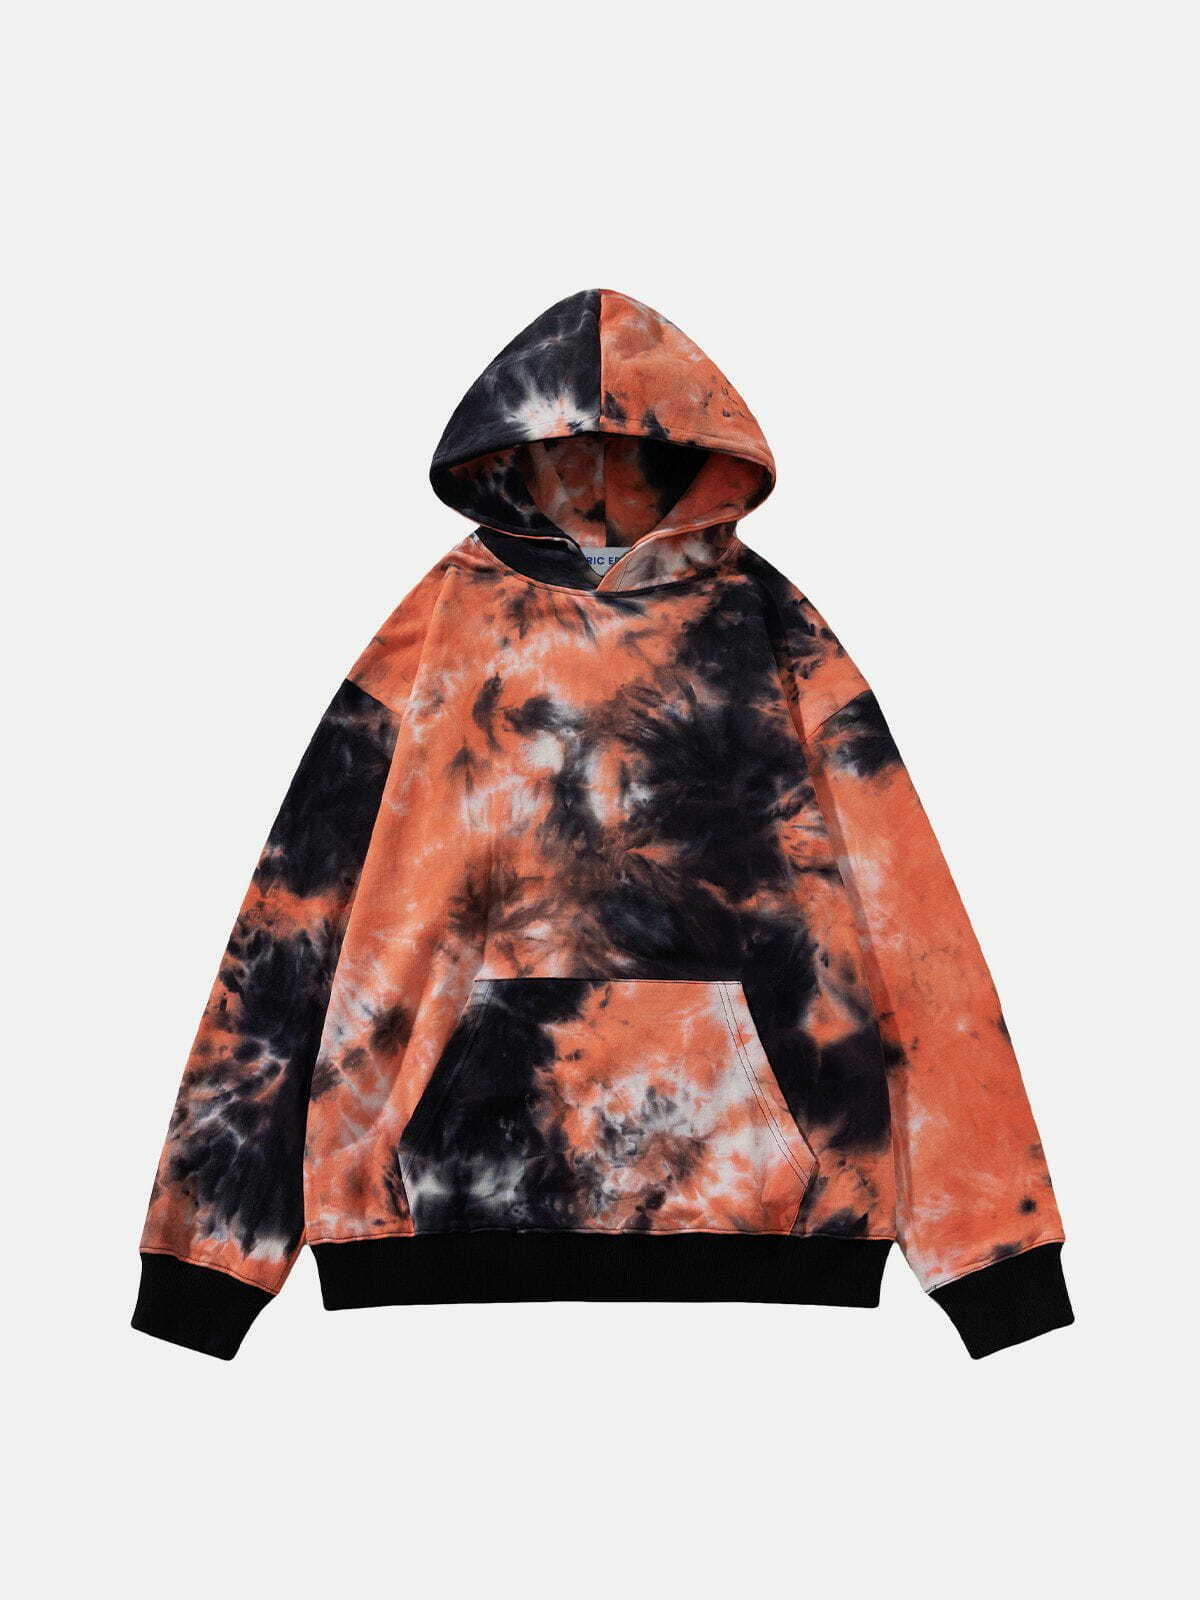 vibrant tie dye hoodie urban streetwear 6007